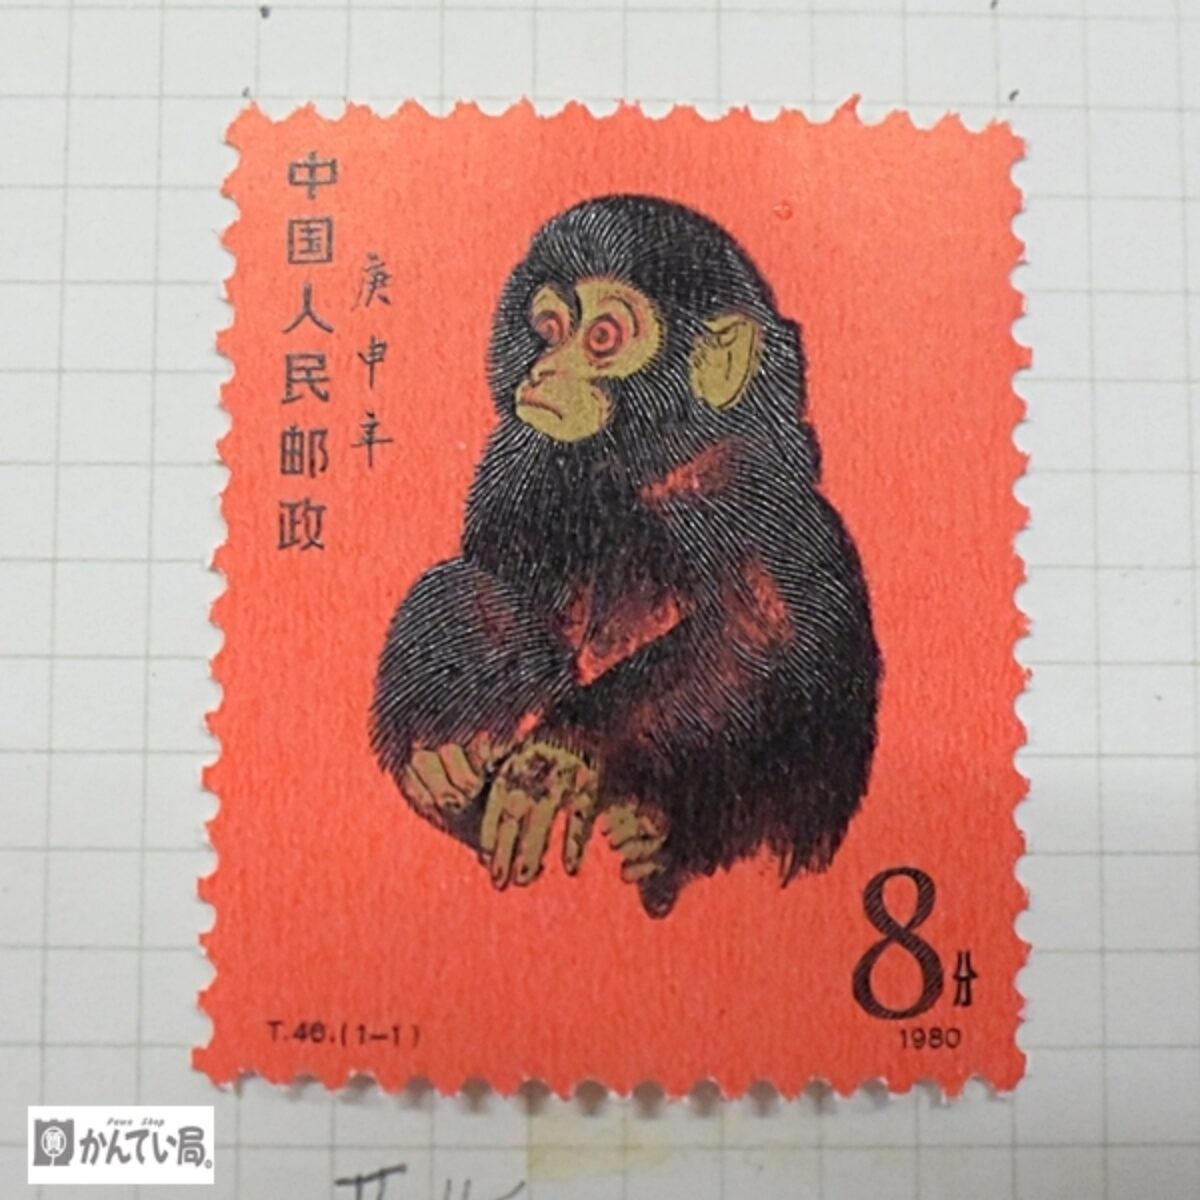 215 フランス切手 1989年発行 フランス革命記念切手